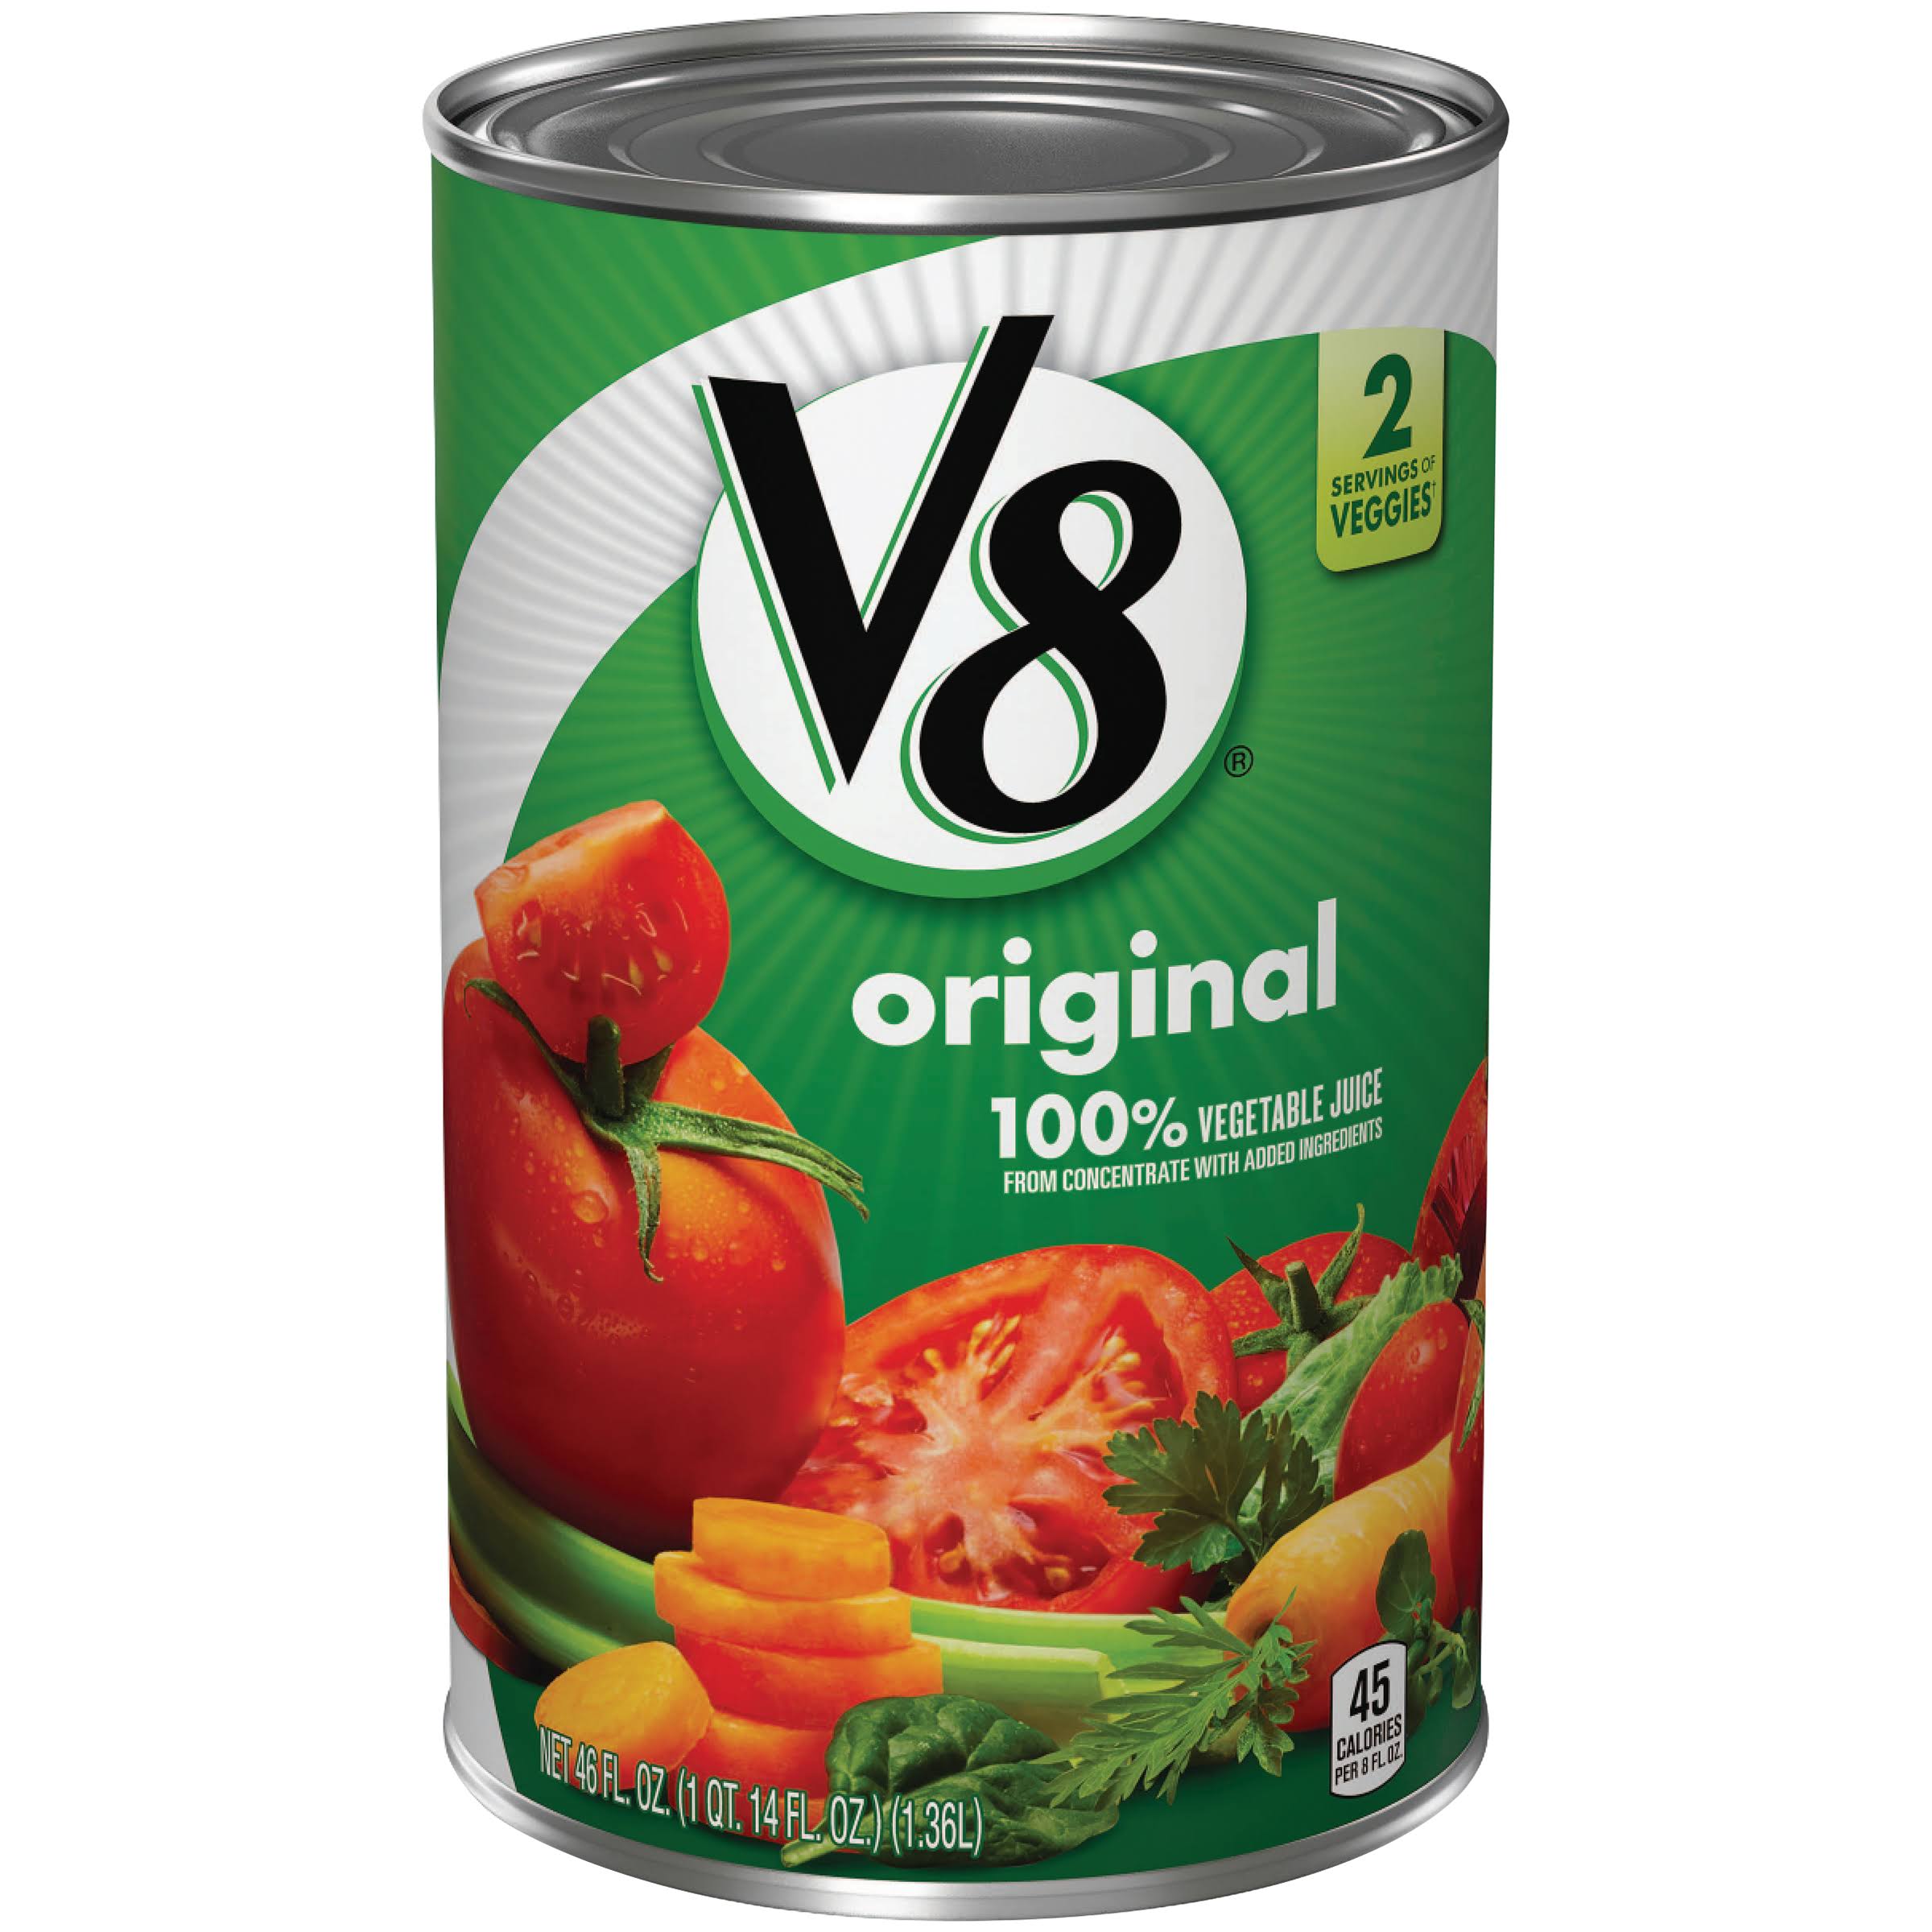 V8 Original 100% Vegetable Juice - 46oz